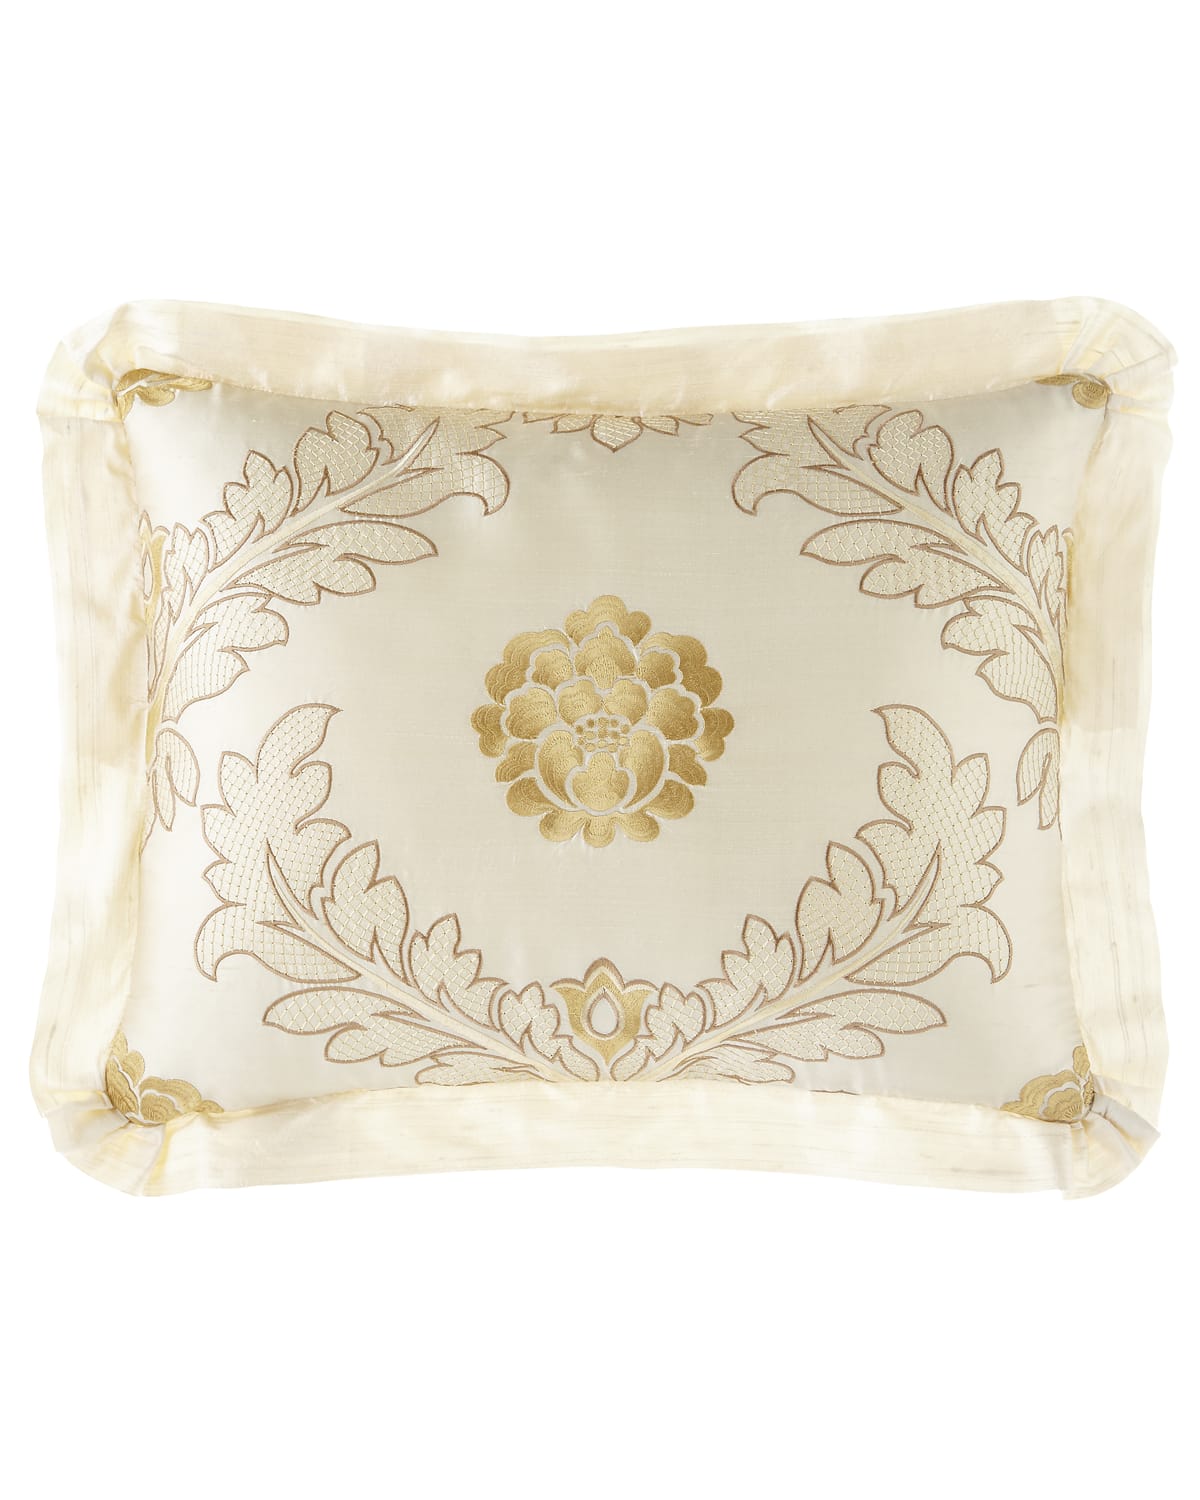 Image Austin Horn Collection Coronado Boudoir Pillow